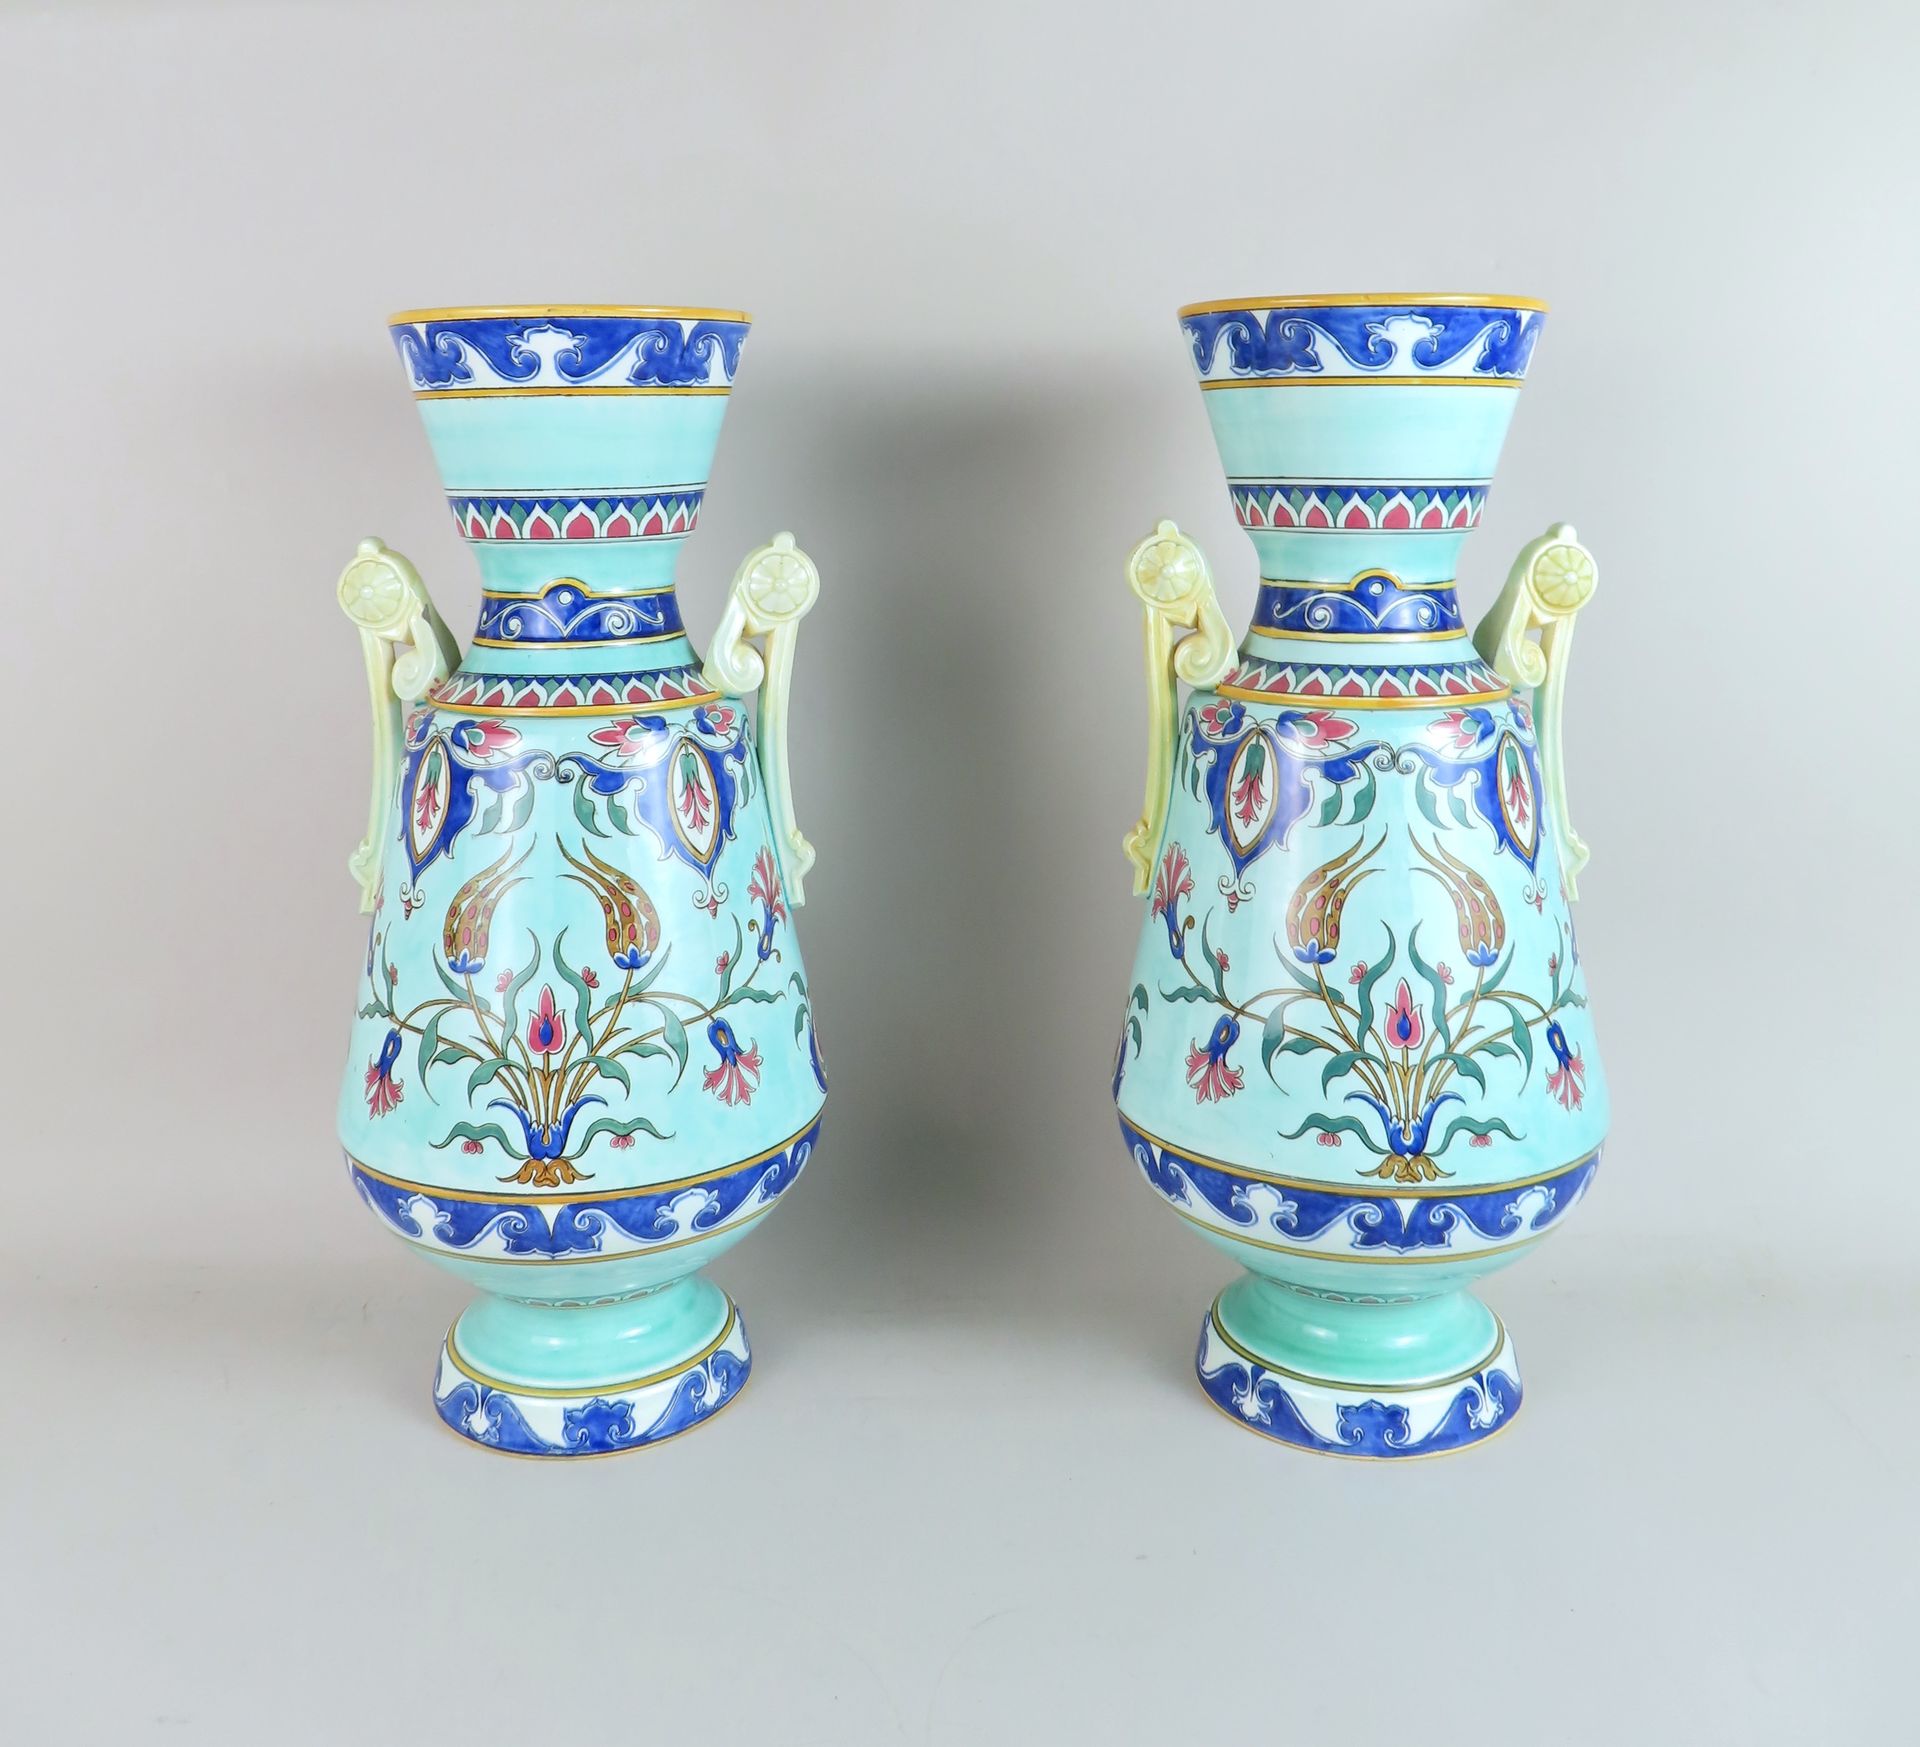 Null 萨拉热窝一对 "伊特鲁里亚 "形花瓶，小底座上有两个把手，多色陶器上装饰有伊兹尼克风格的花卉卷轴和阿拉伯式花饰。底座下有签名和浮雕。高 47.5 厘米&hellip;